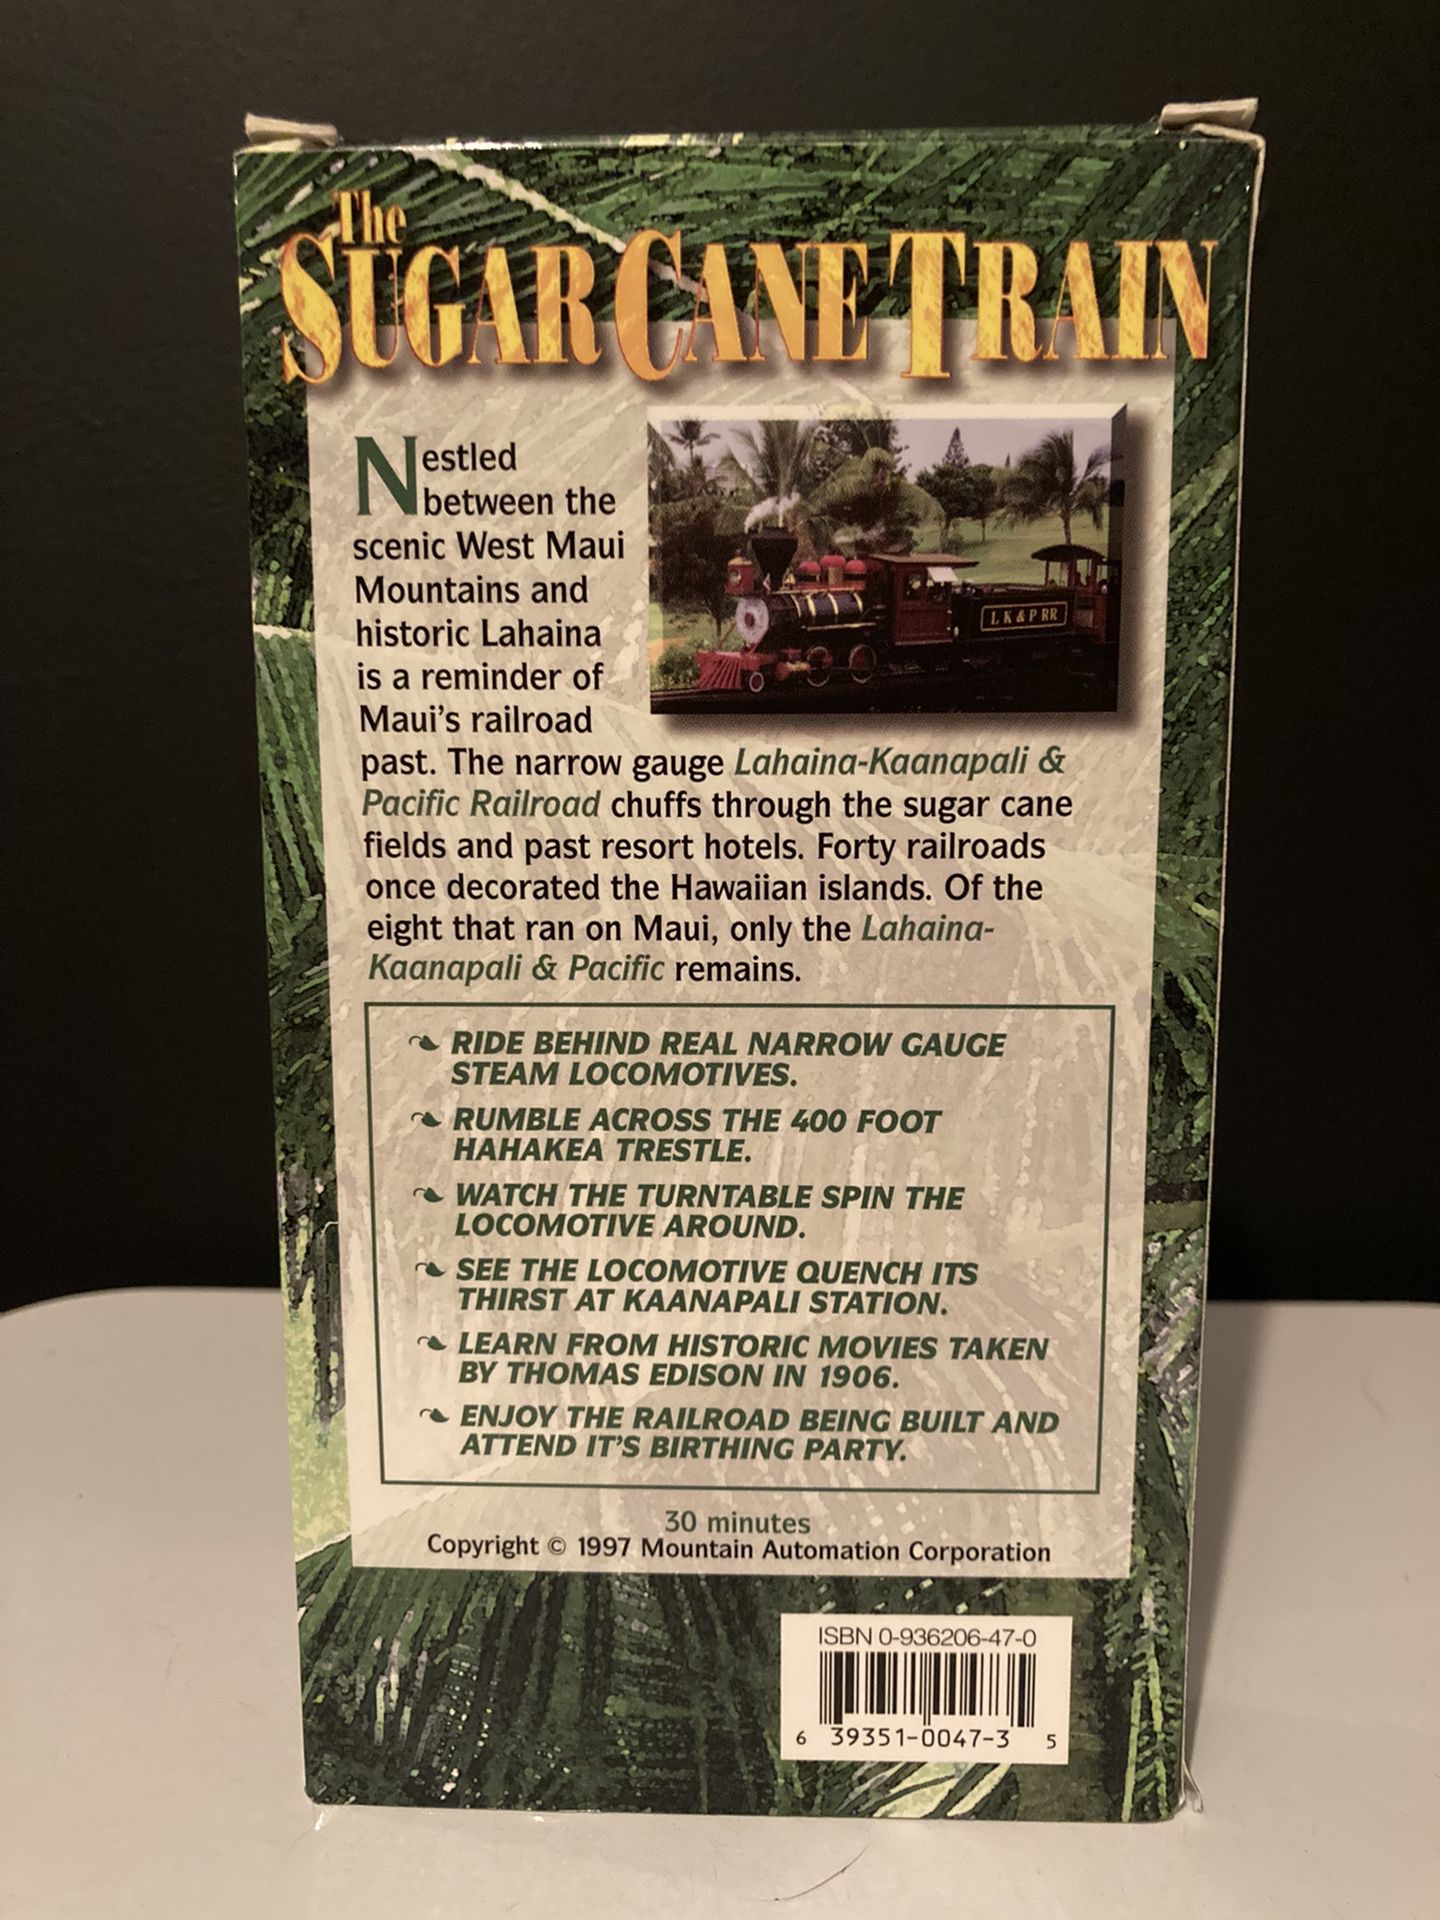 The Sugar Cane Train (VHS, 1997)